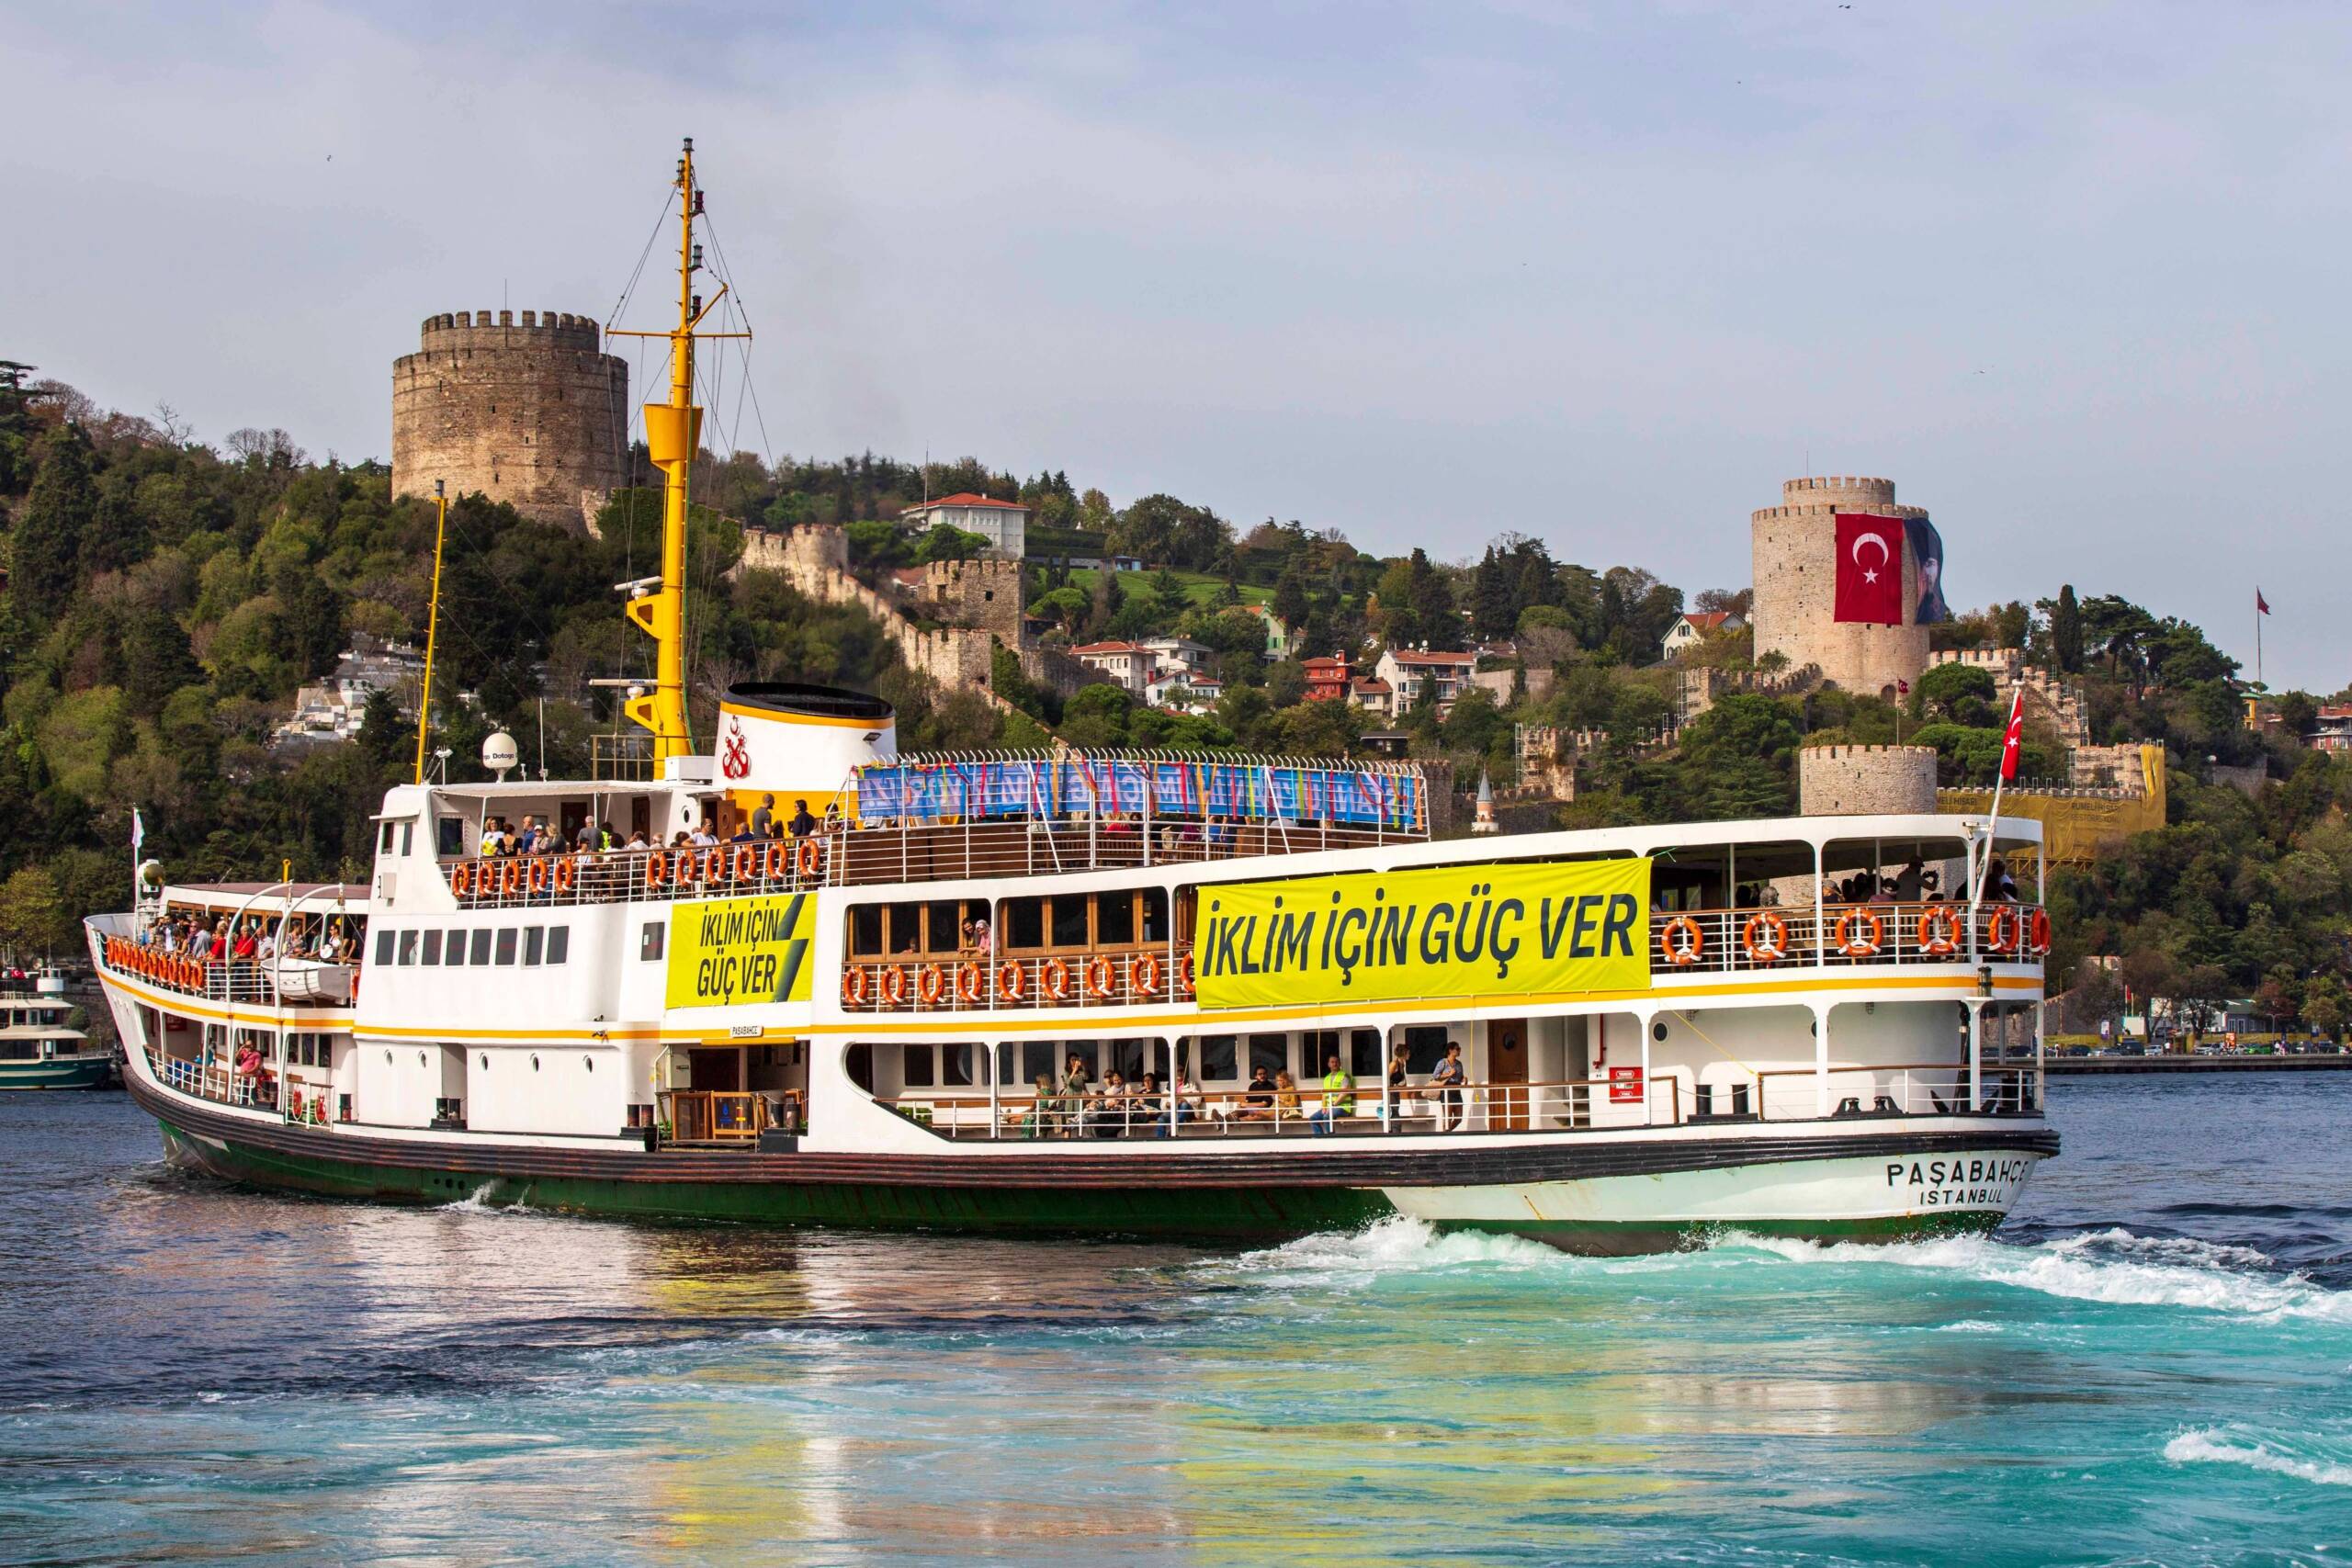 Estambul, Turquía, 4 de noviembre: 350 Turquía convierte uno de los transbordadores tradicionales del Bósforo en un transbordador climático con talleres y actividades durante el viaje, en demanda de un mundo a base de energías renovables. Créditos: 350 Turquía